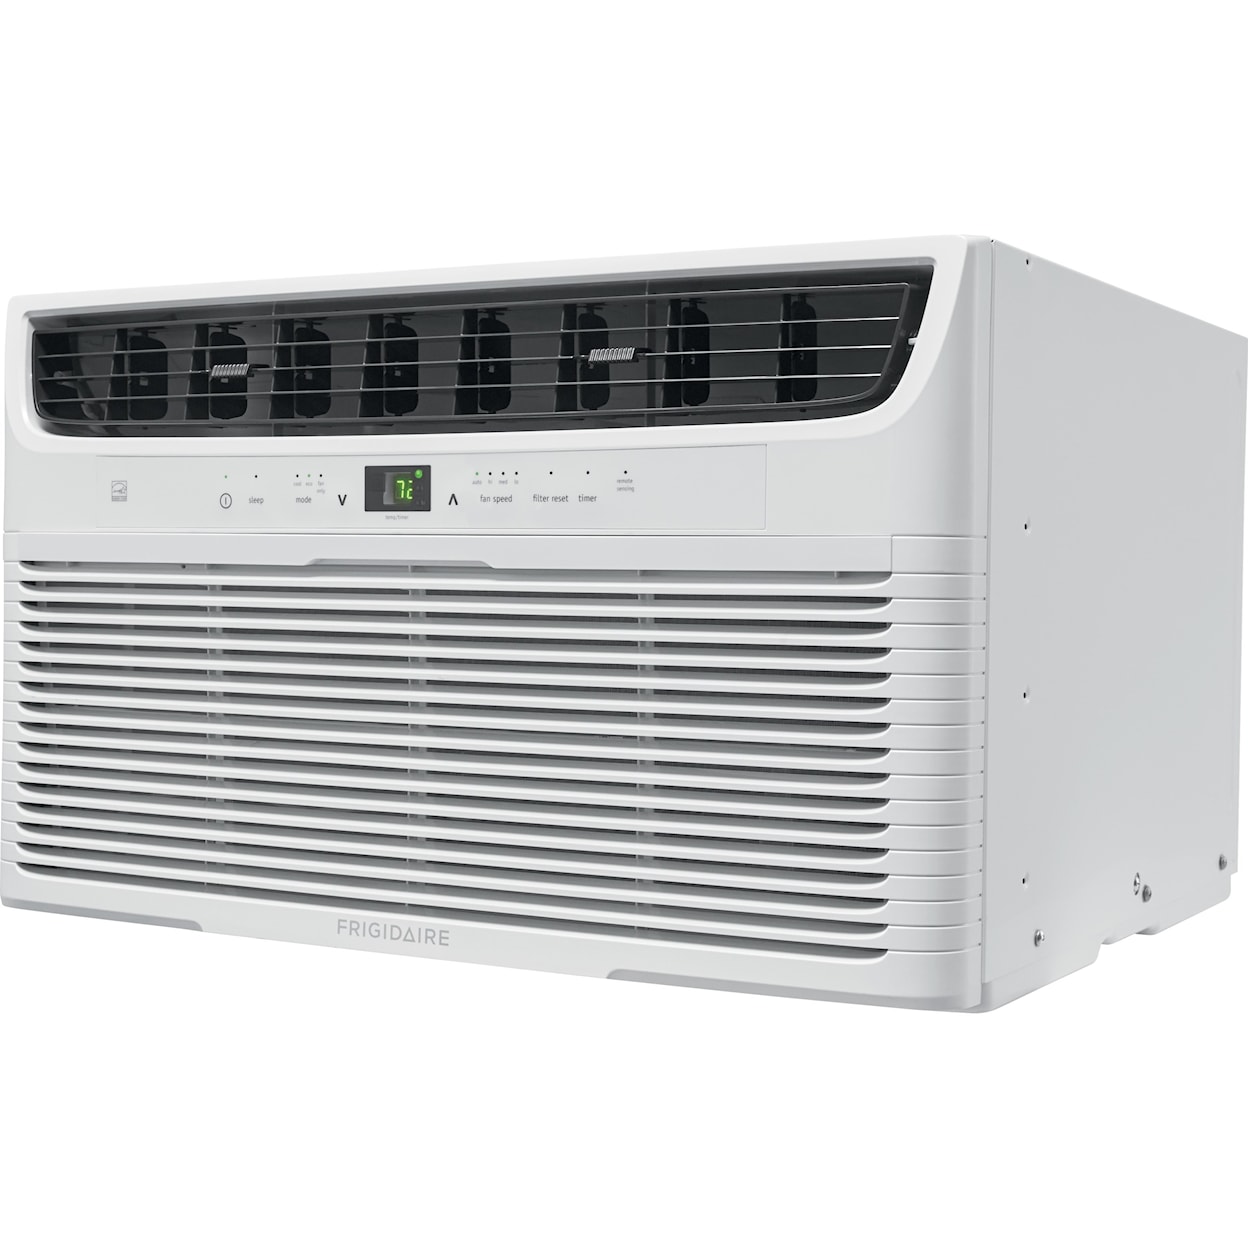 Frigidaire Air Conditioners 10,000 BTU Built-In Room Air Conditioner